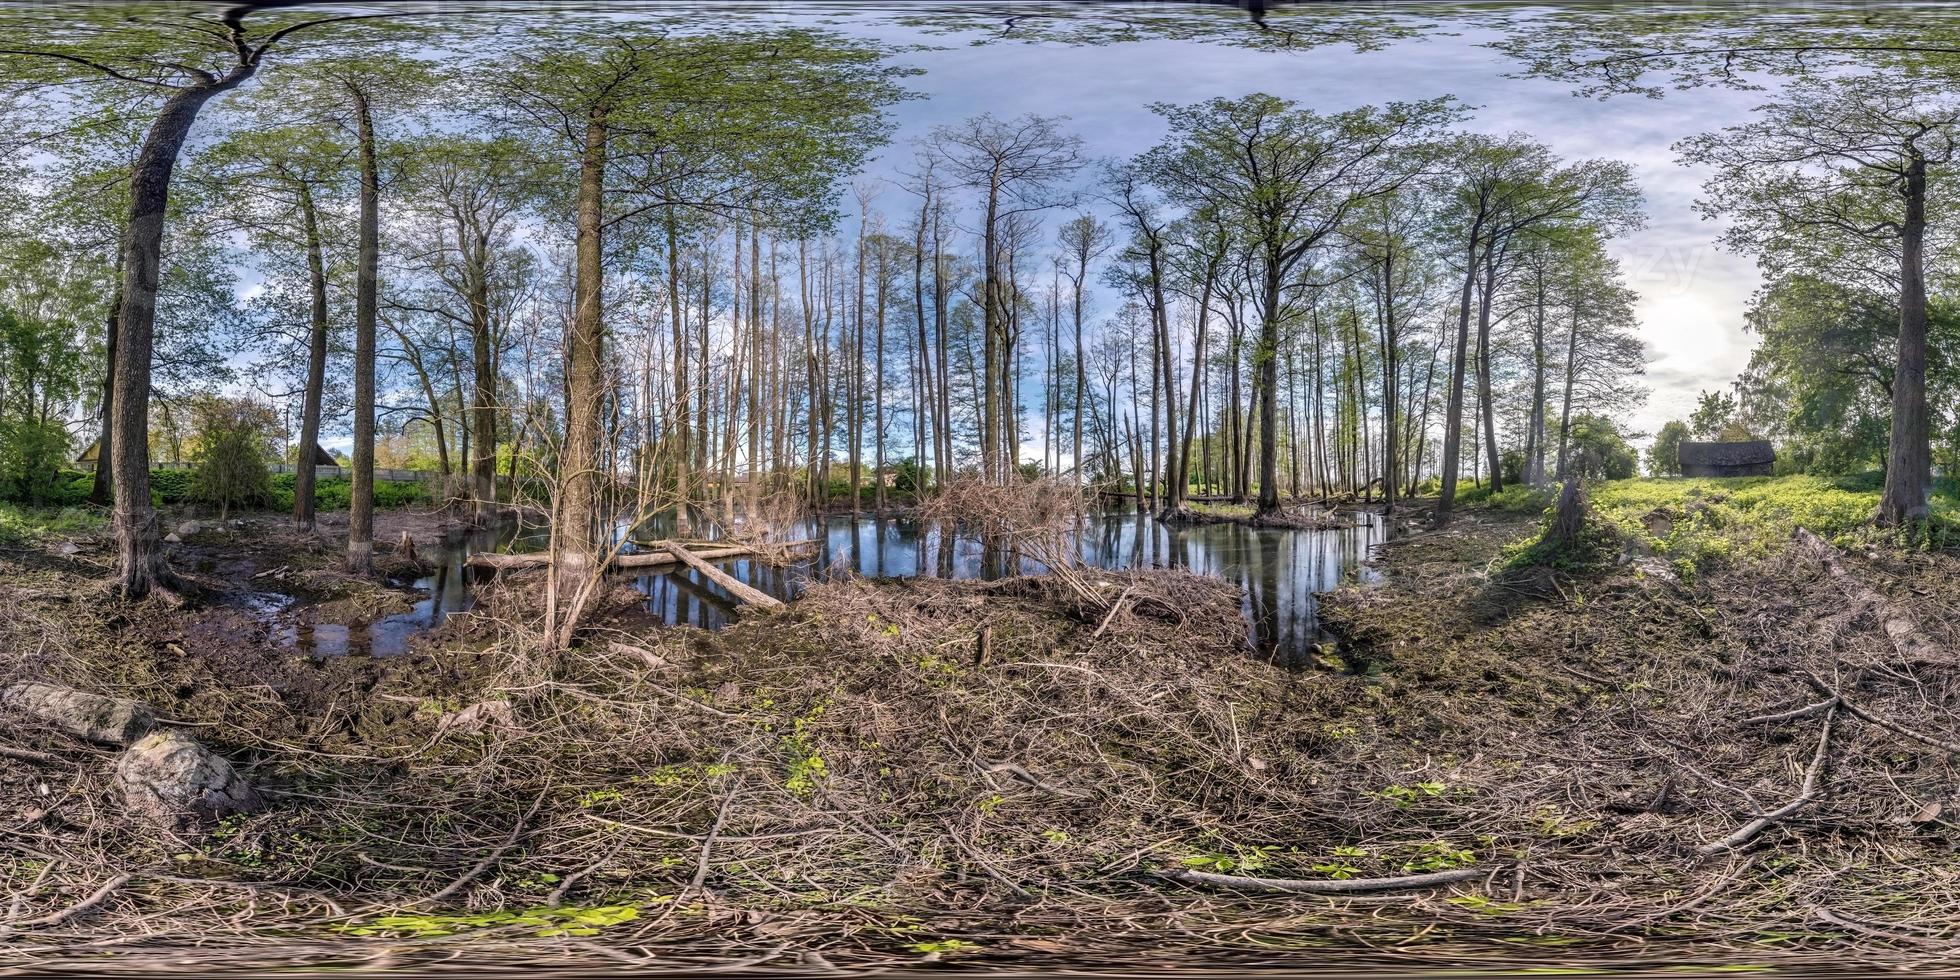 volledig naadloos bolvormig hdri-panorama 360 graden kijkhoek tussen hoge bomen bos in water van moeras in equirectangular projectie, klaar vr ar virtual reality-inhoud foto